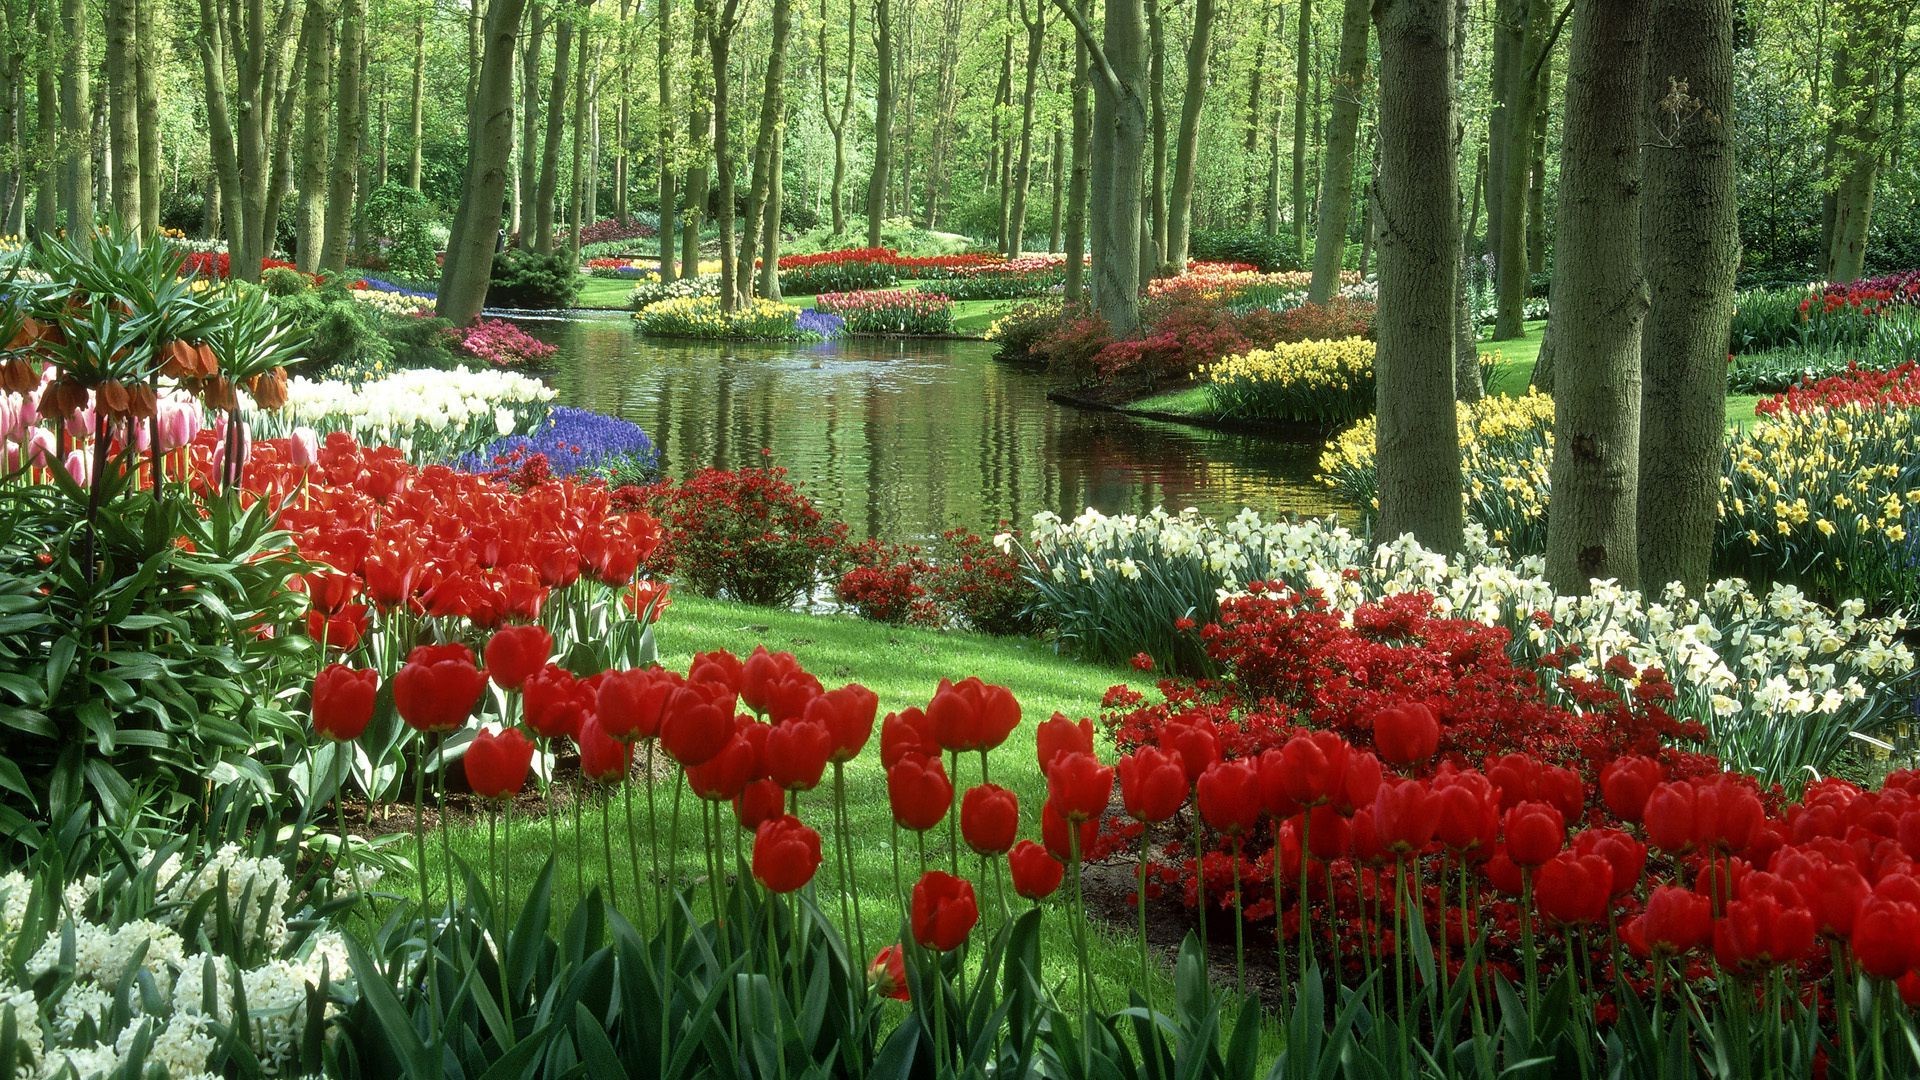 тюльпаны сад цветок лист природа парк тюльпан флора сезон цвет цветочные блюминг рост пейзаж дерево весна яркий древесины